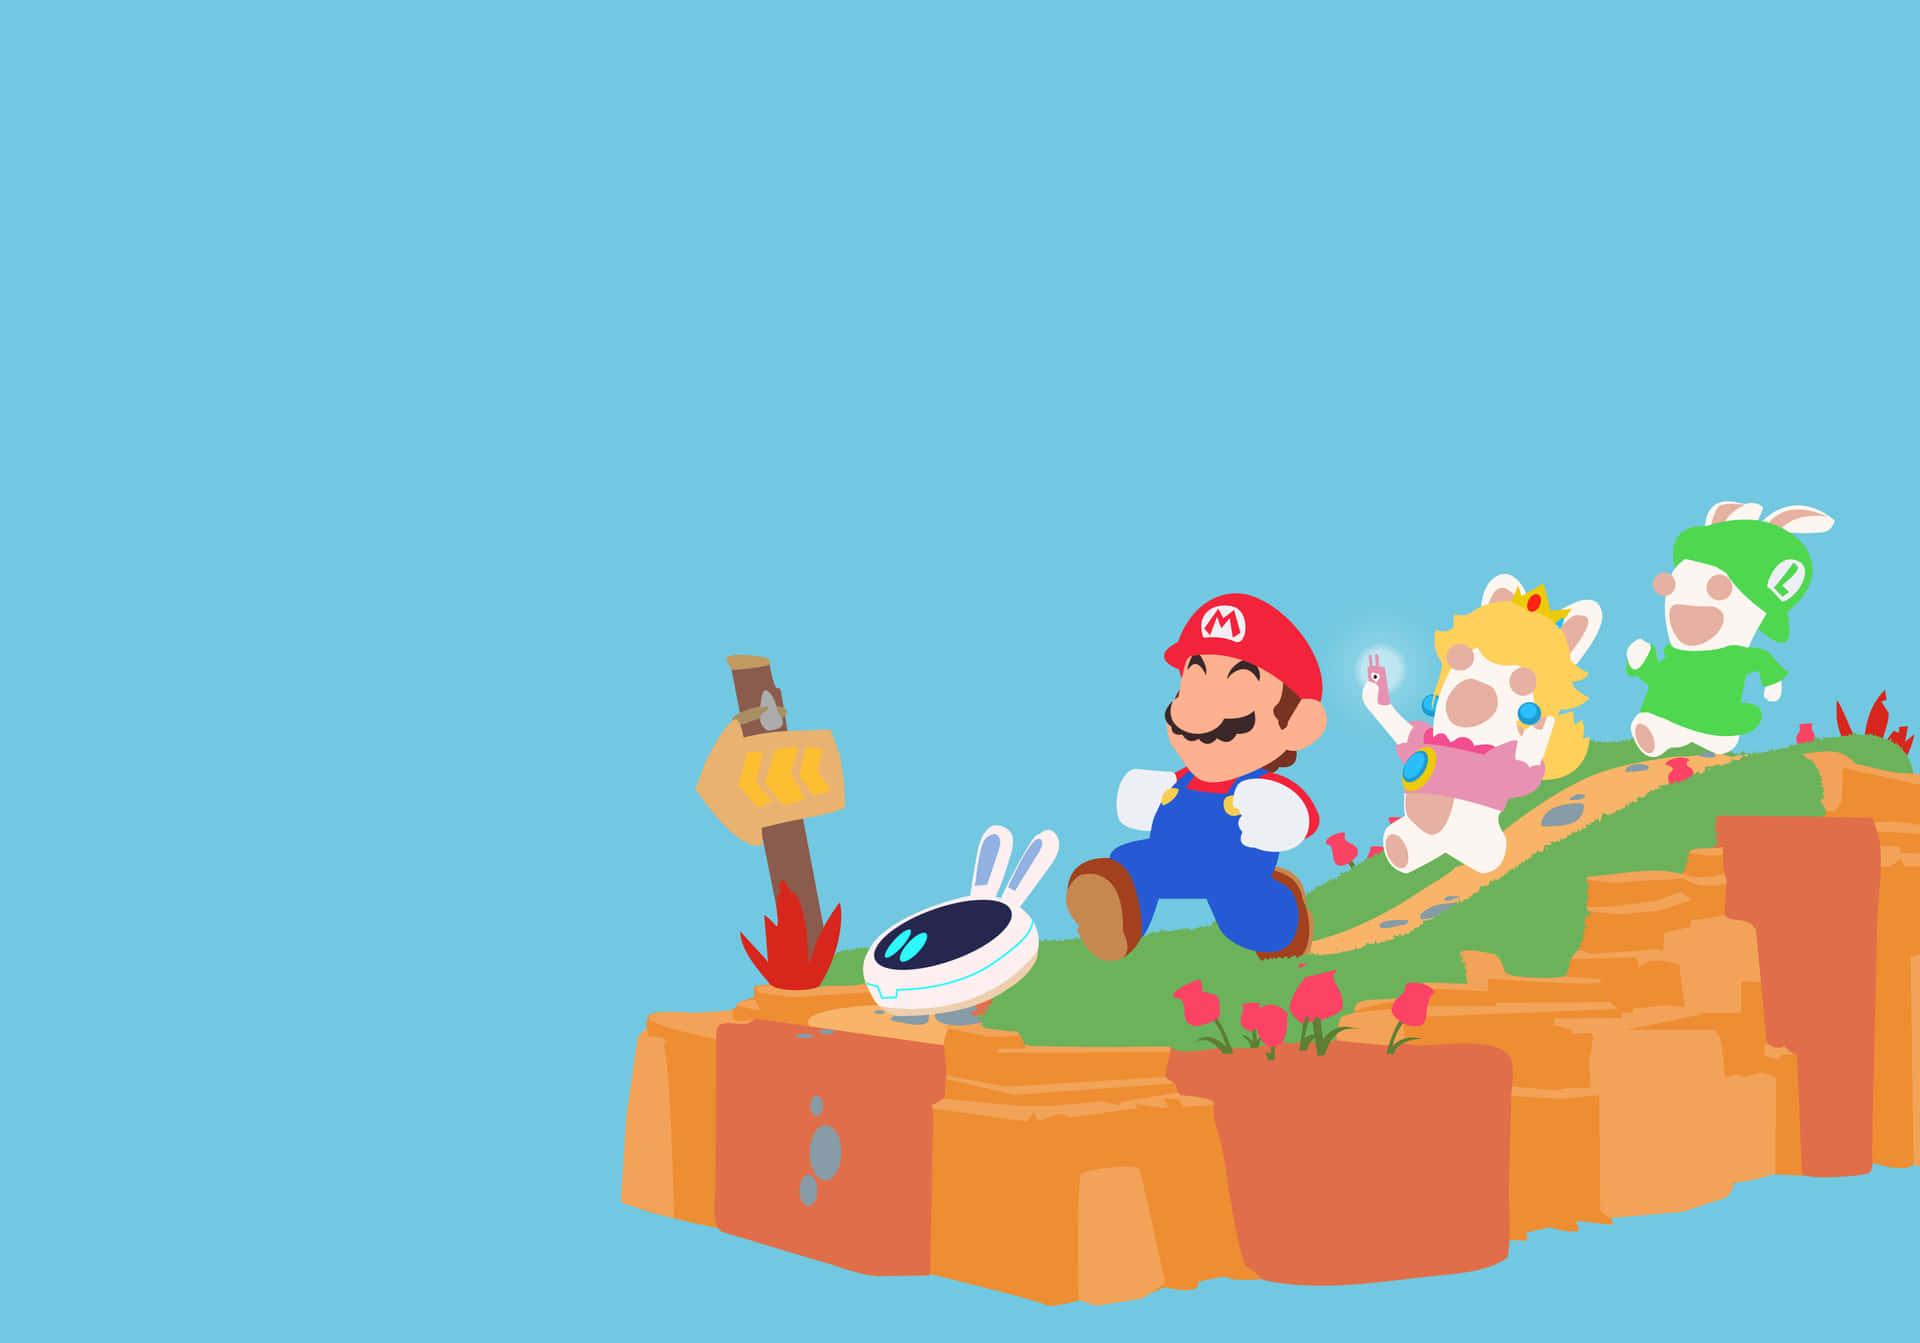 Mario baggrunden har fire røde stjerner.